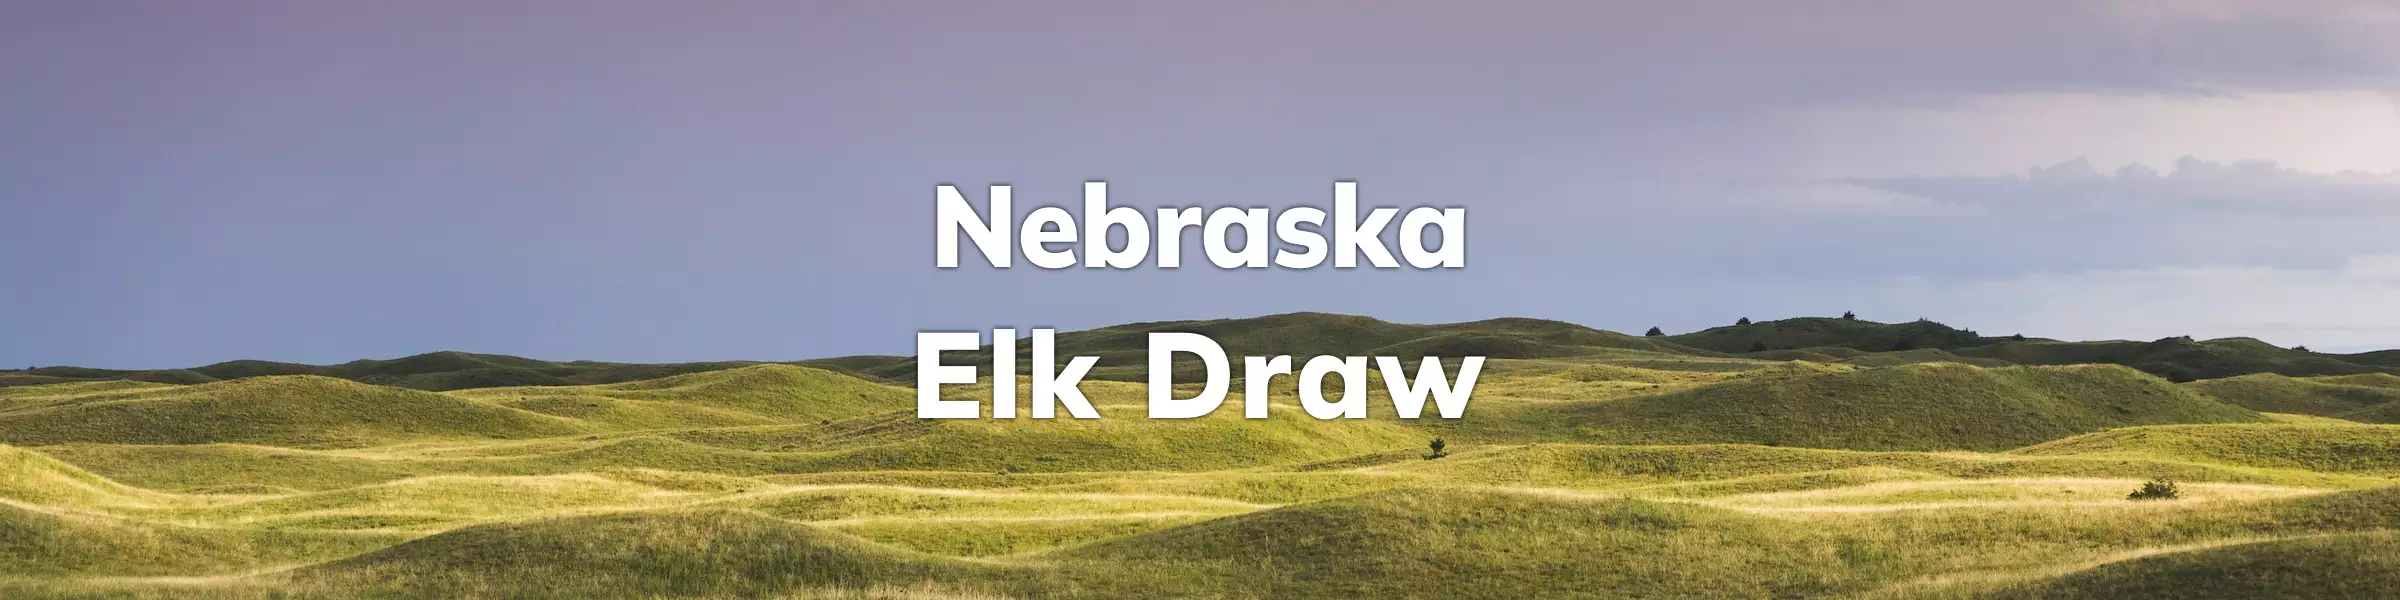 Nebraska Elk Draw